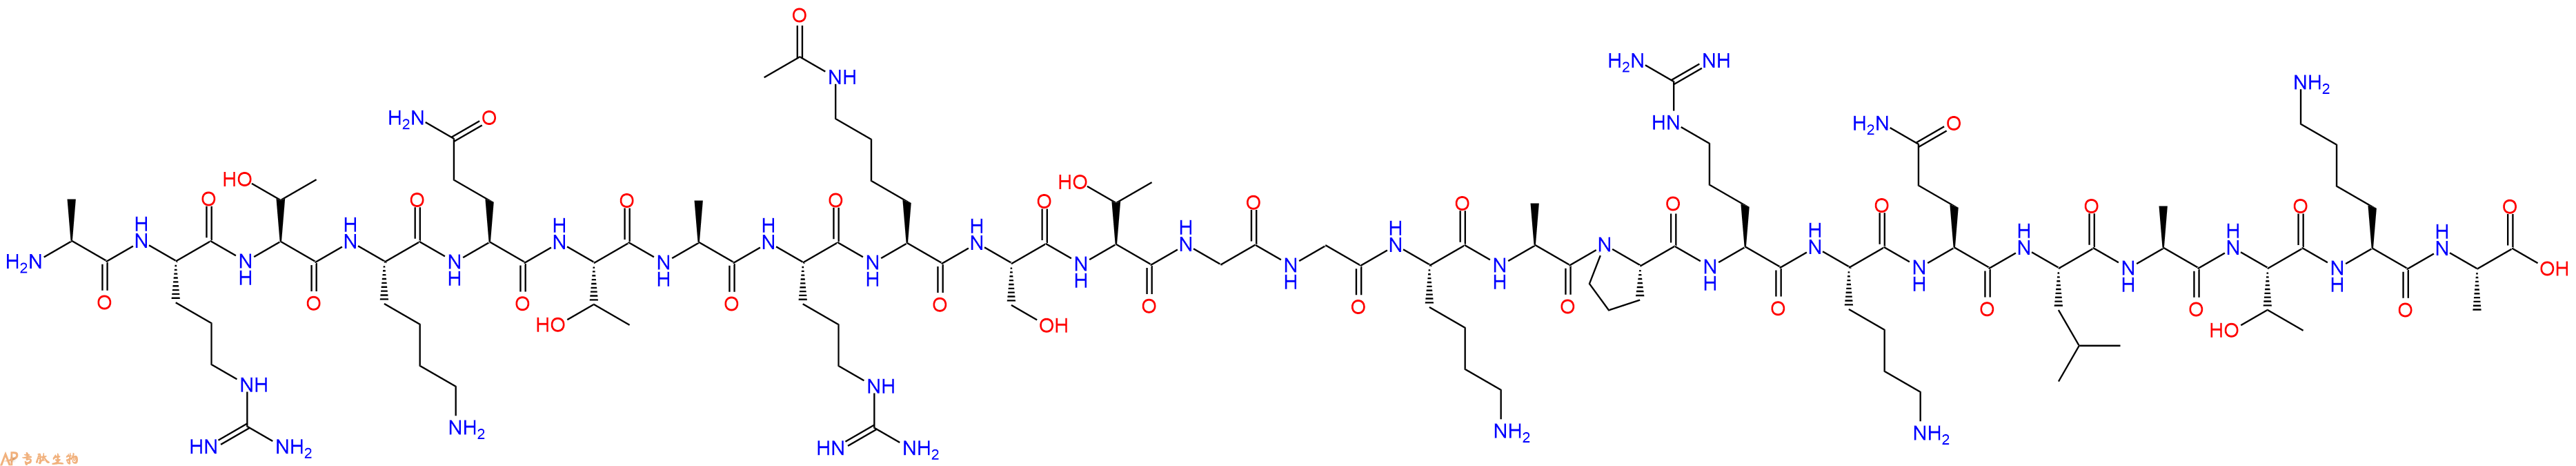 专肽生物产品组蛋白肽段[Lys(Ac)9]-Histone H3(1-24), H3K9(Ac)